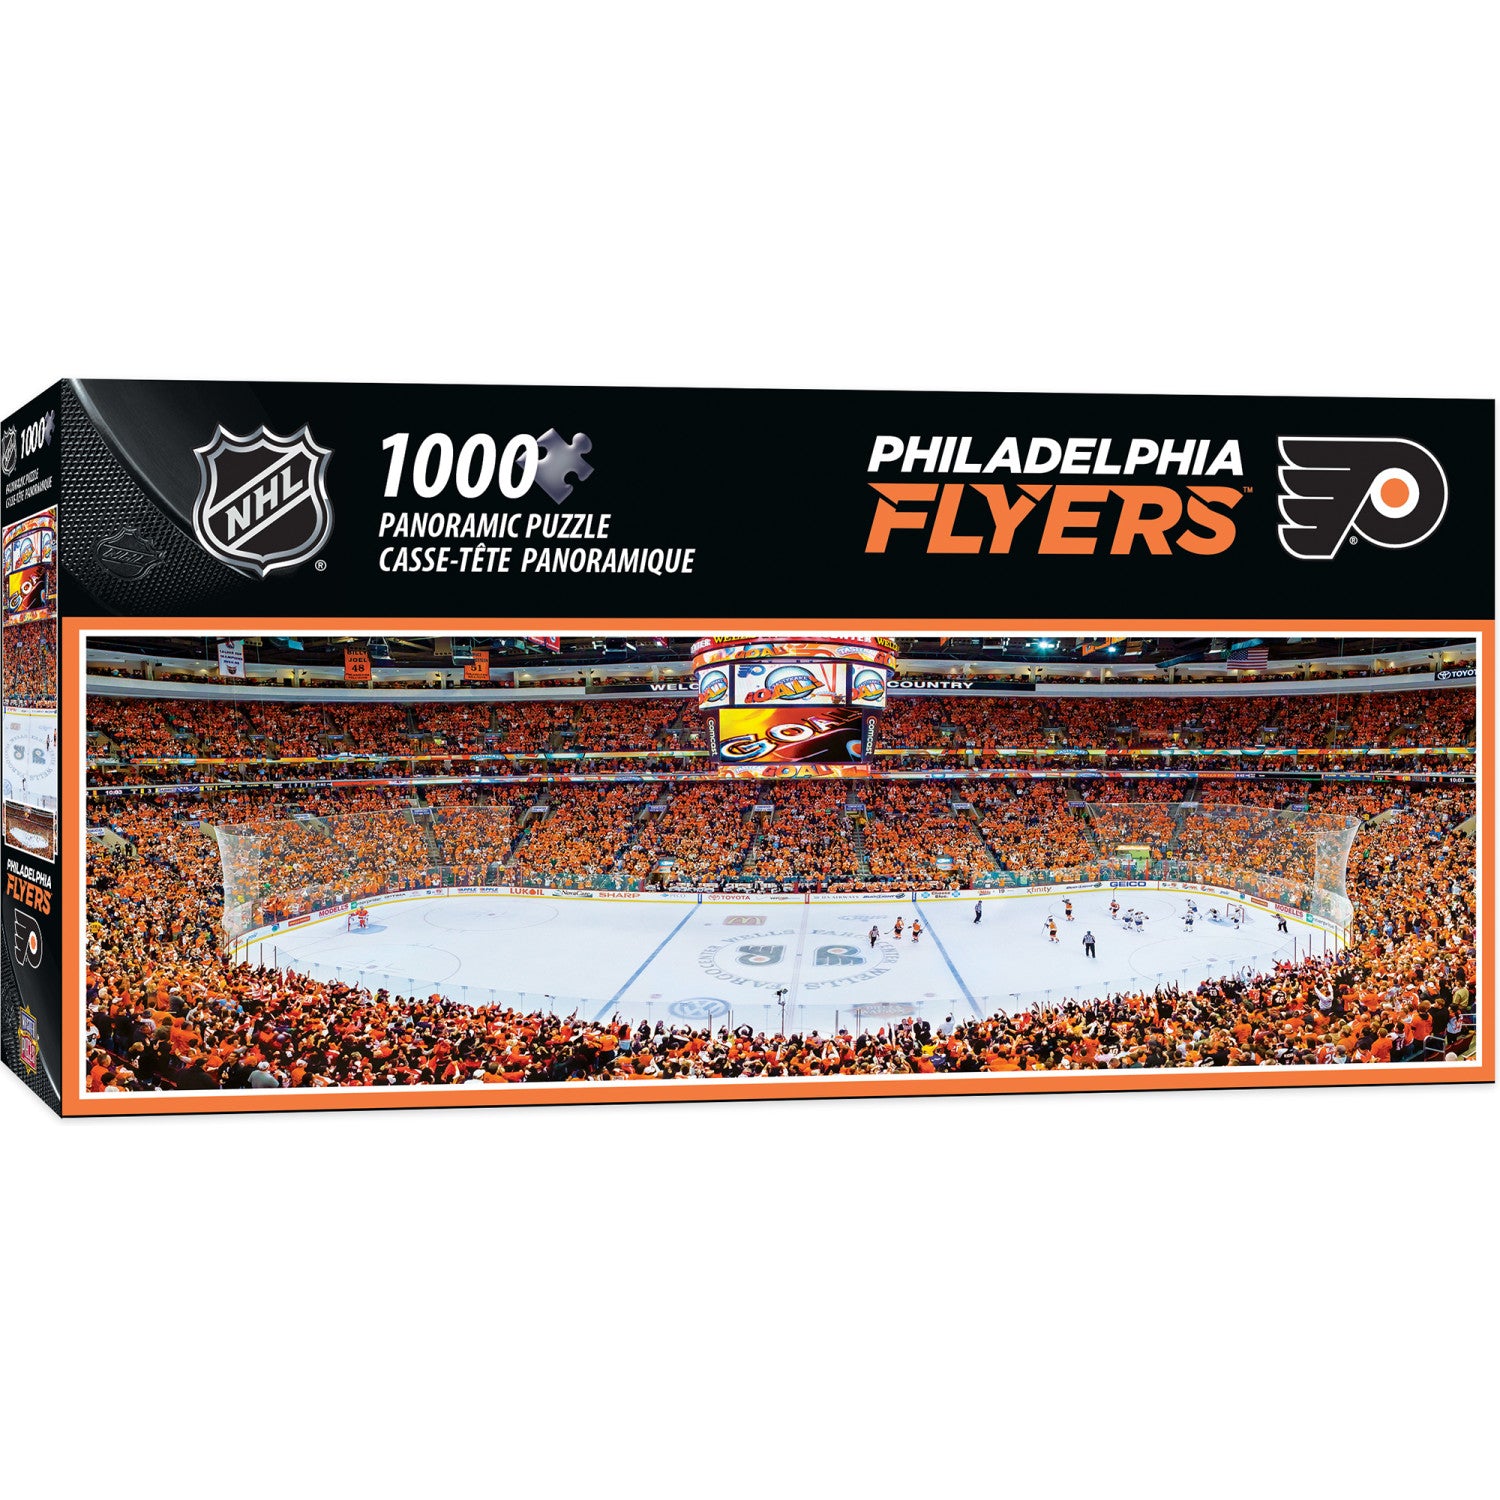 Philadelphia Flyers - 1000 Piece Panoramic Puzzle